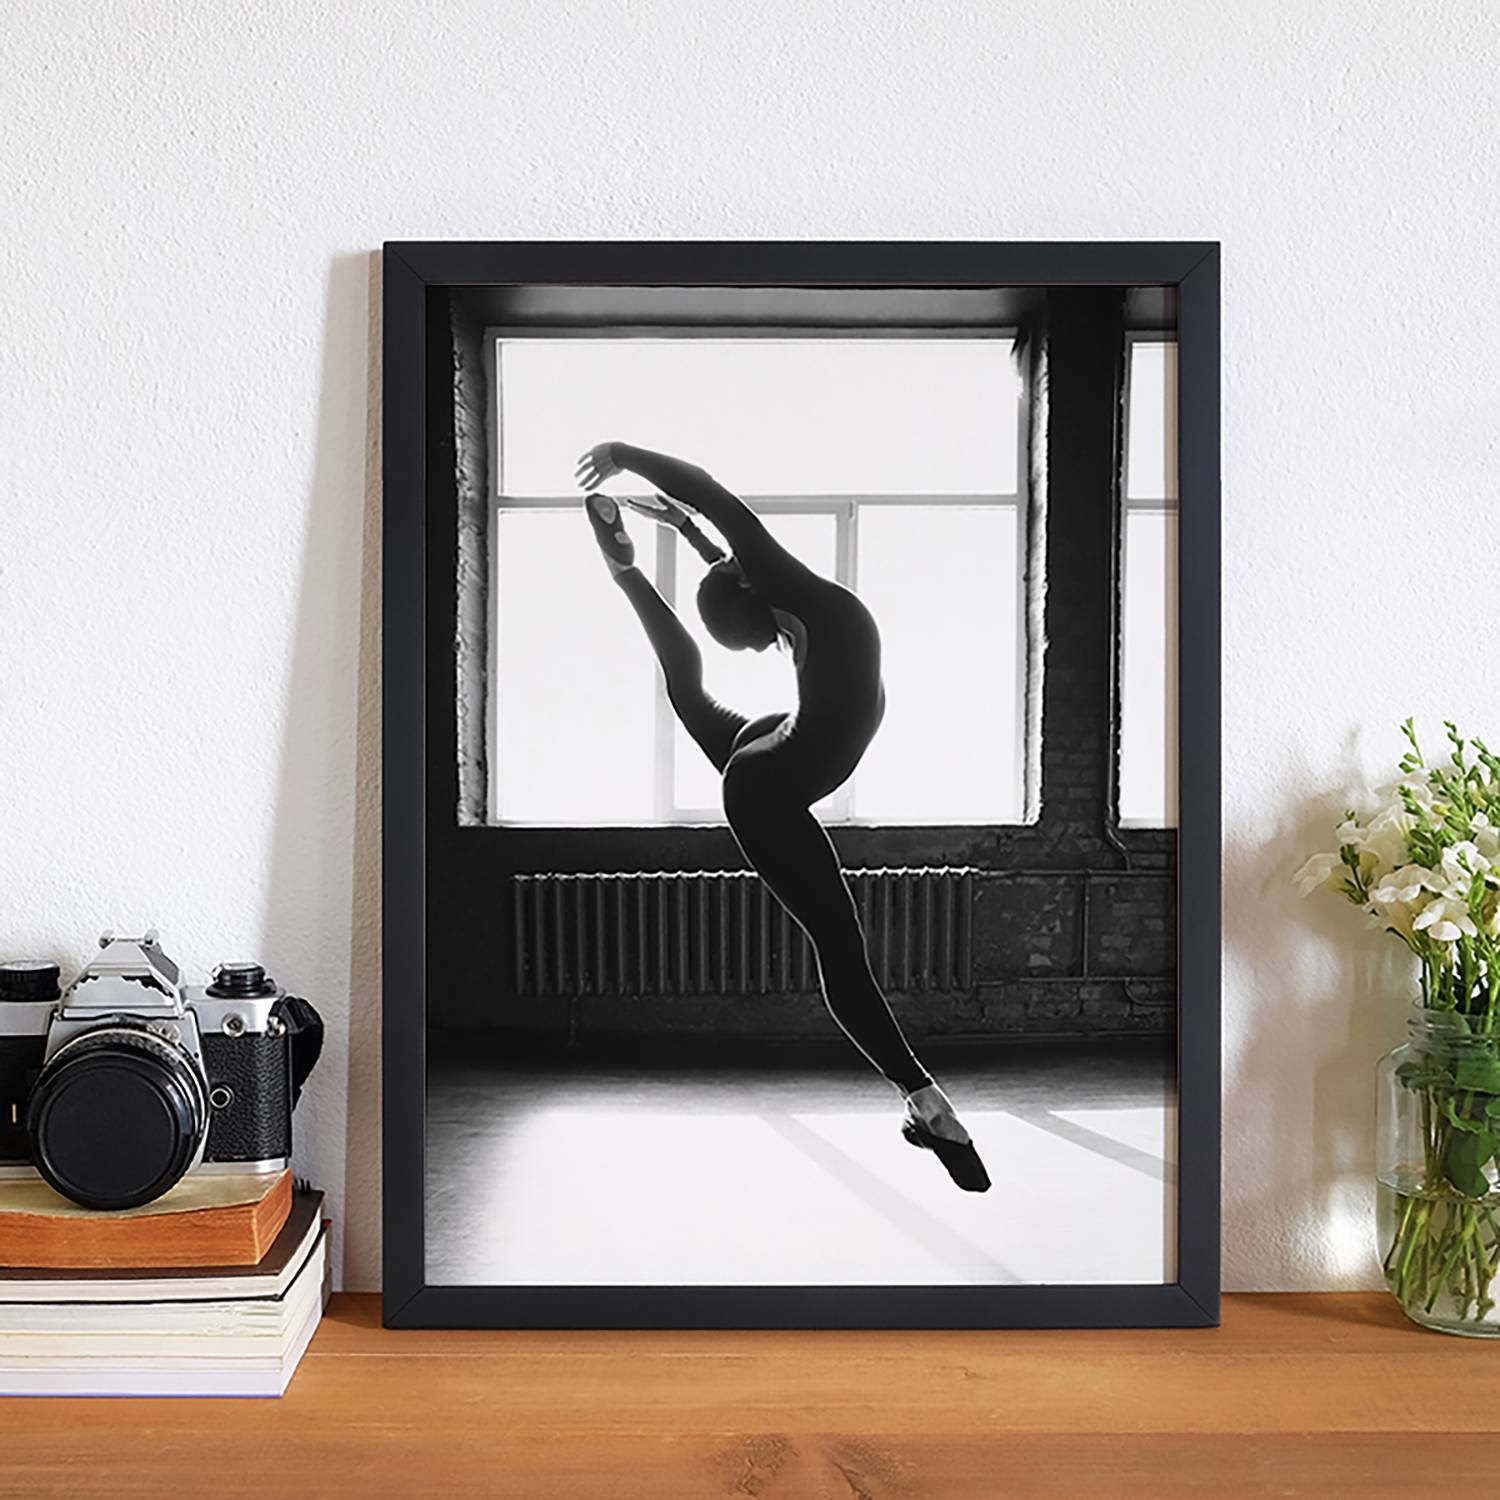 Home24 Afbeelding Ballerina Dancing Indoors, Any Image